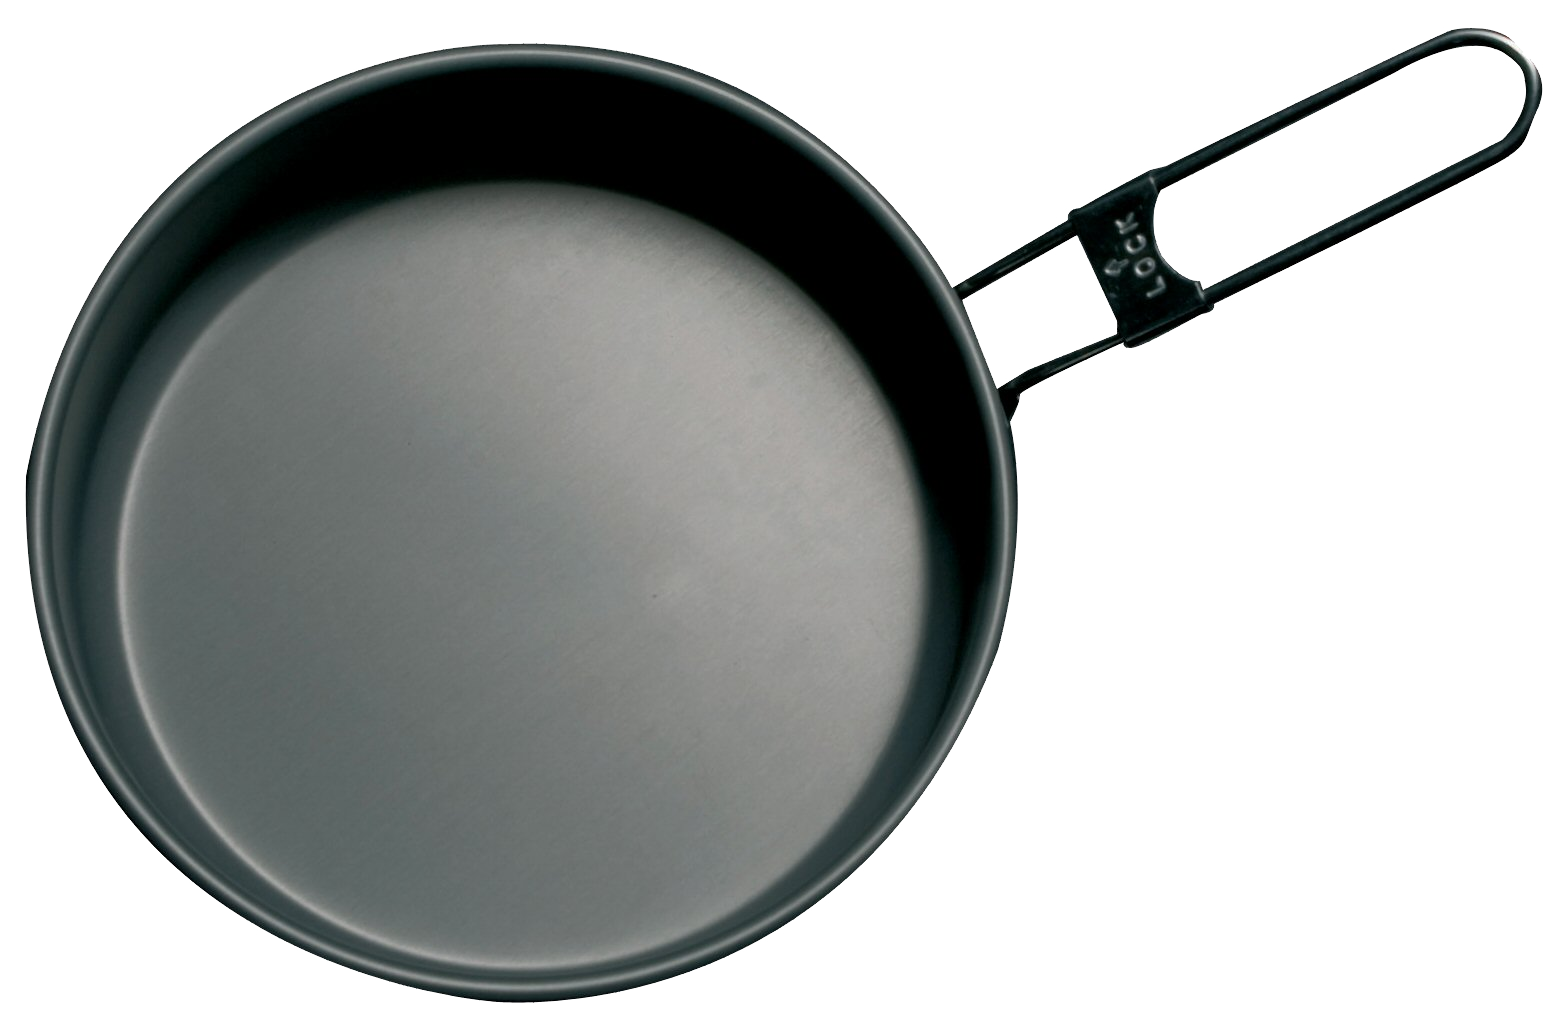 Frying Pan PNG Image